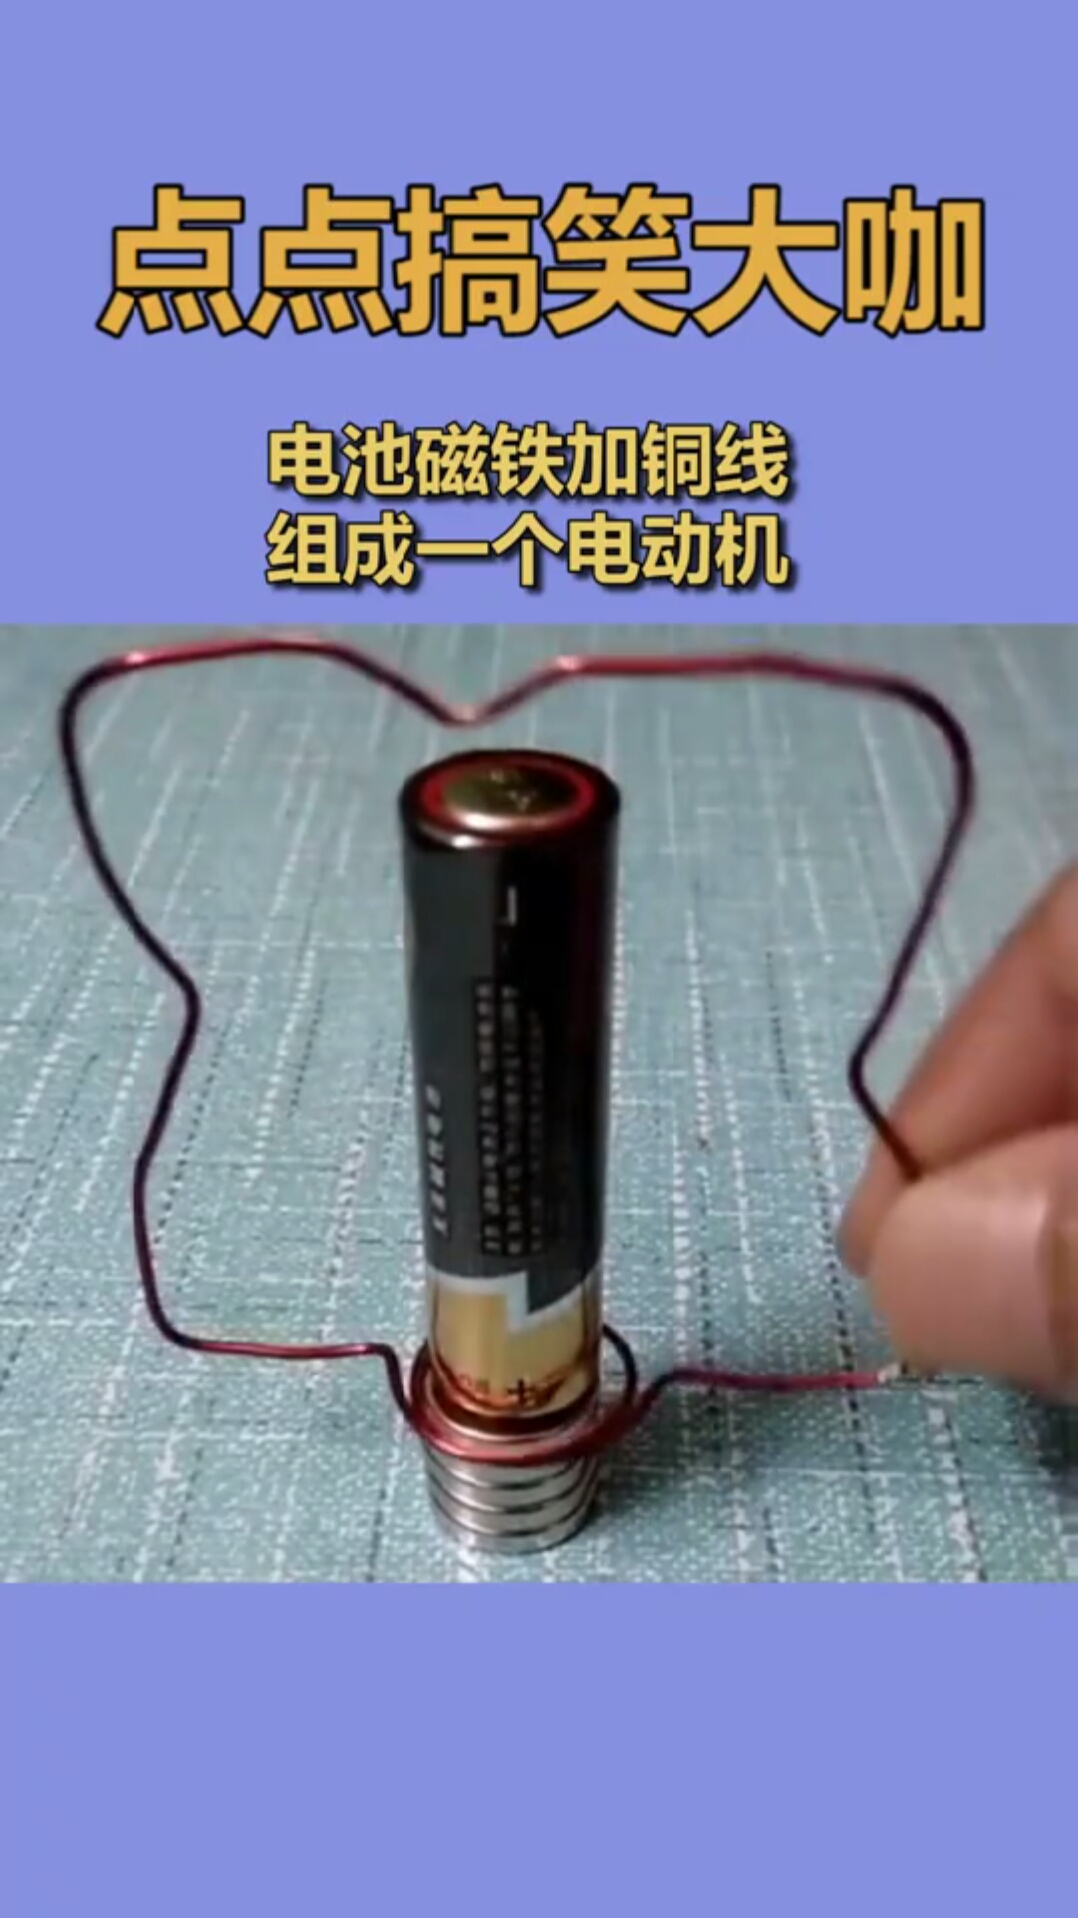 电池磁铁加铜线,组成一个电动机